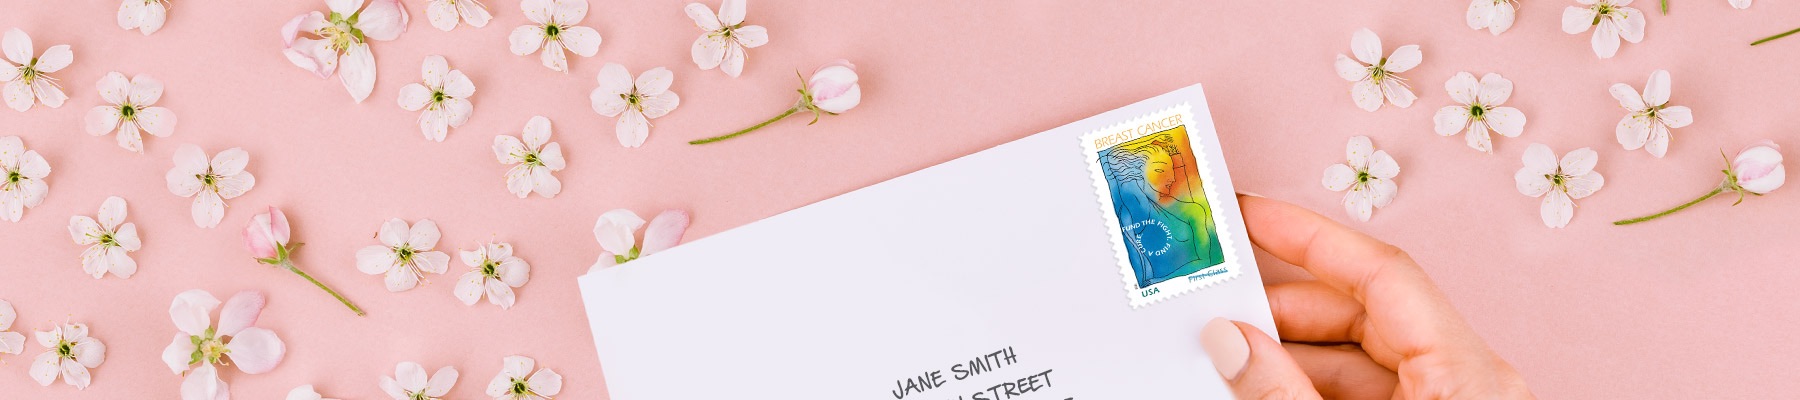 带有《Breast Cancer Research》附捐邮票的明信片。